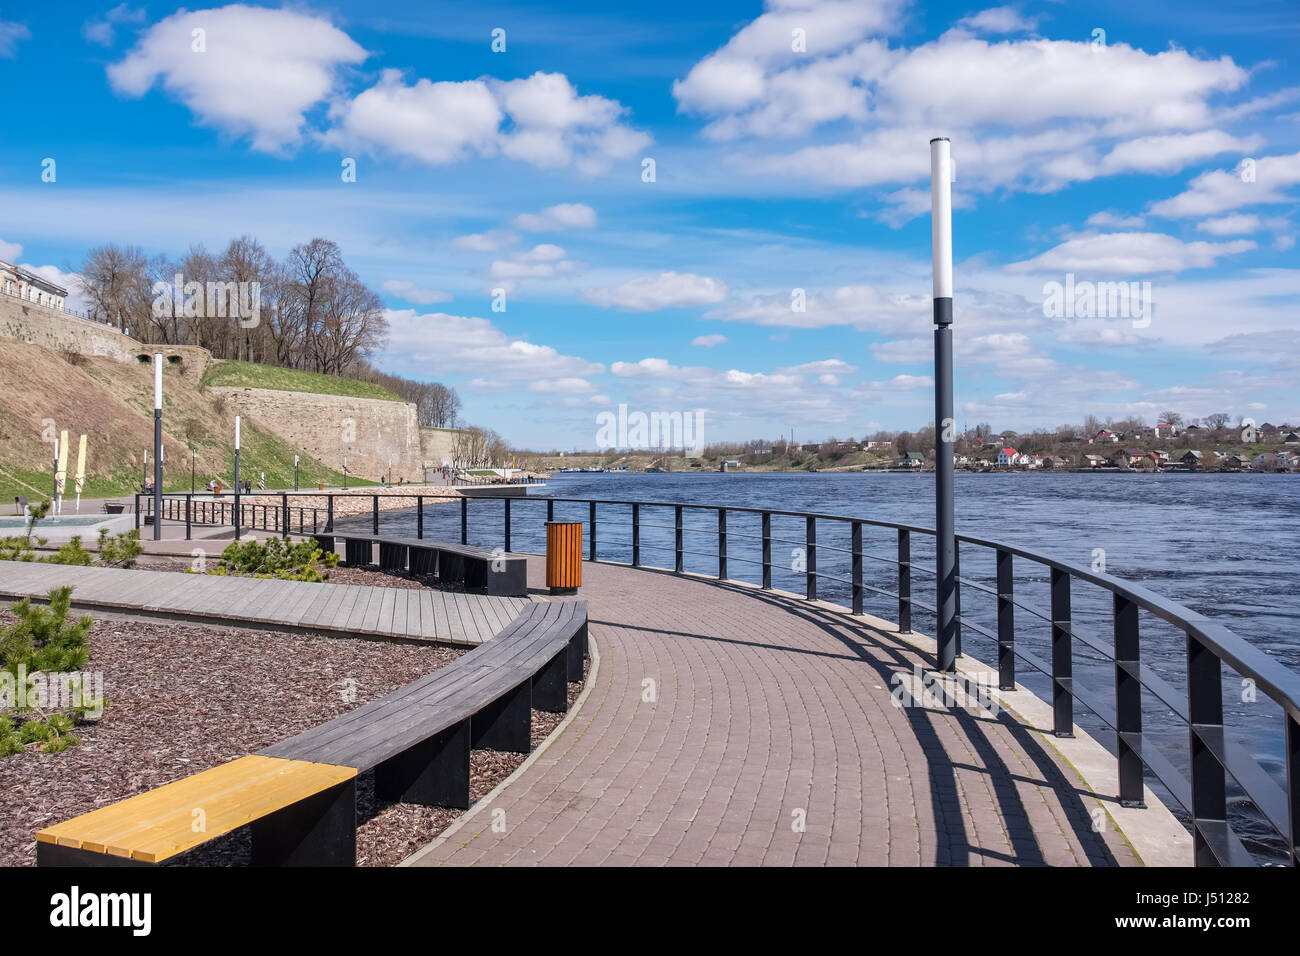 Kai entlang in der Stadt Narva. Estland, Europa. Russische Stadt Ivangorod im Abstand Stockfoto